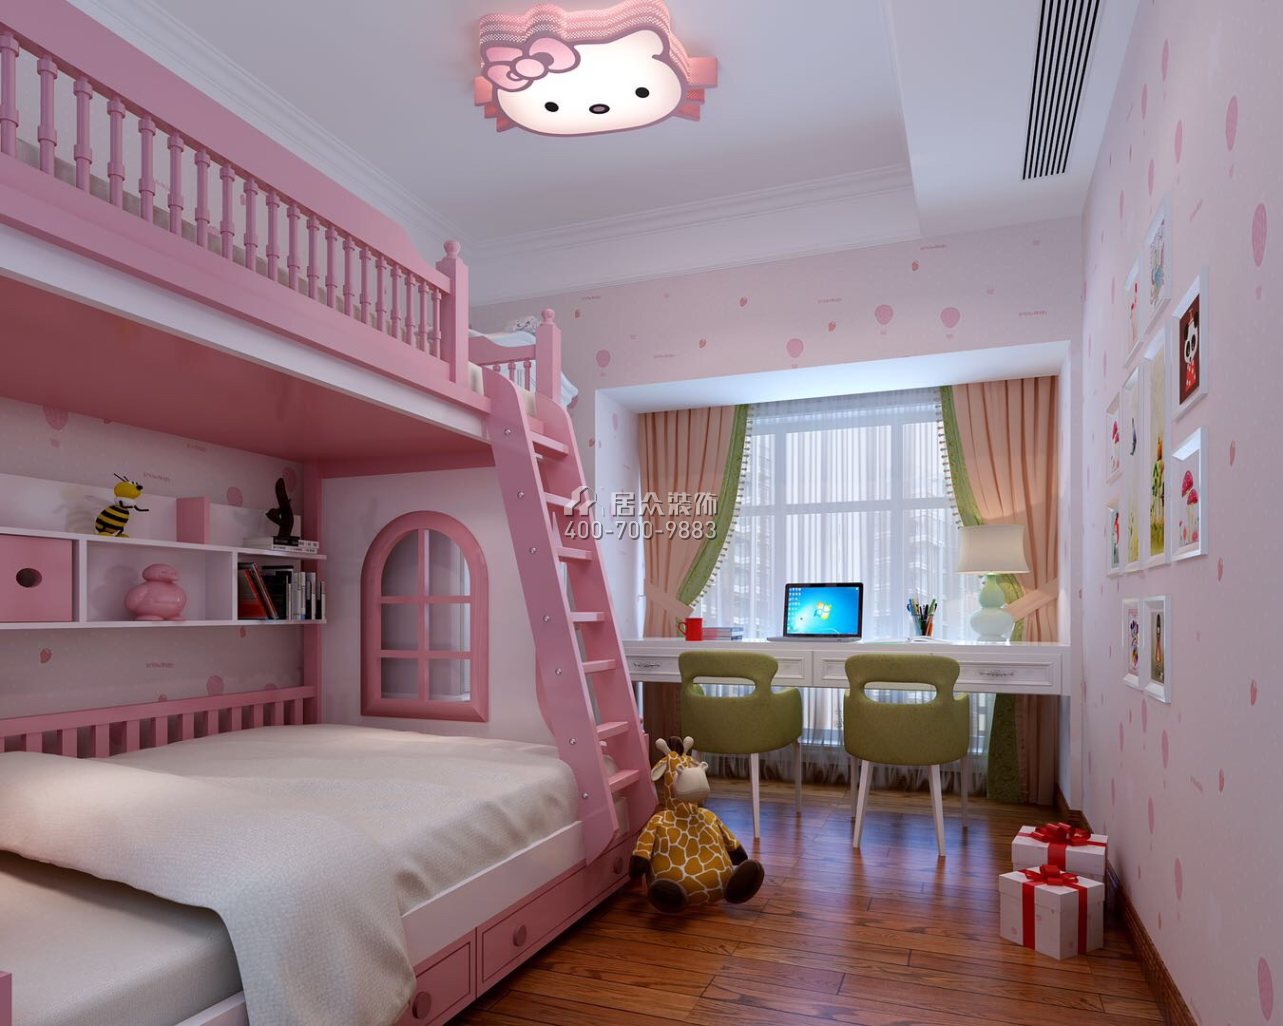 松茂御龍灣雅苑一期160平方米歐式風格平層戶型兒童房裝修效果圖